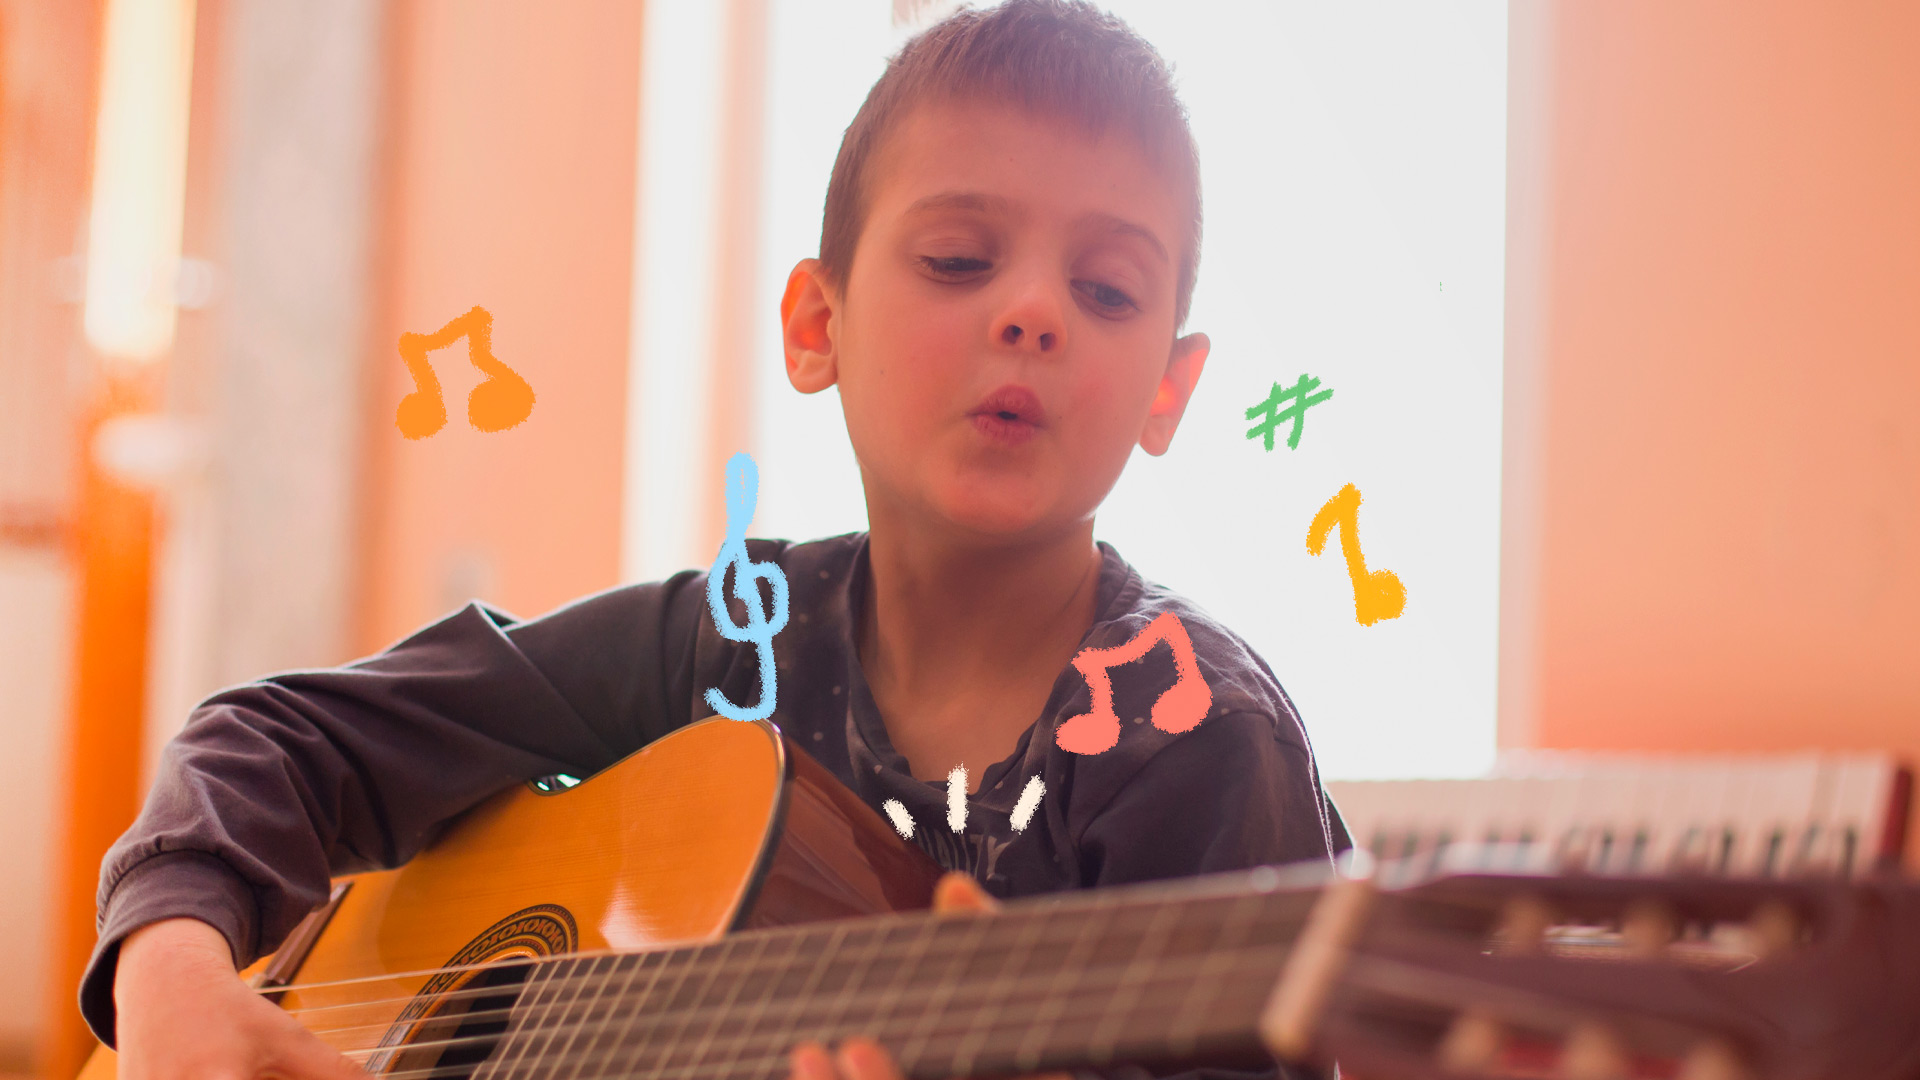 Um menino toca violão e canta. Ao redor, estão desenhadas notas musicais